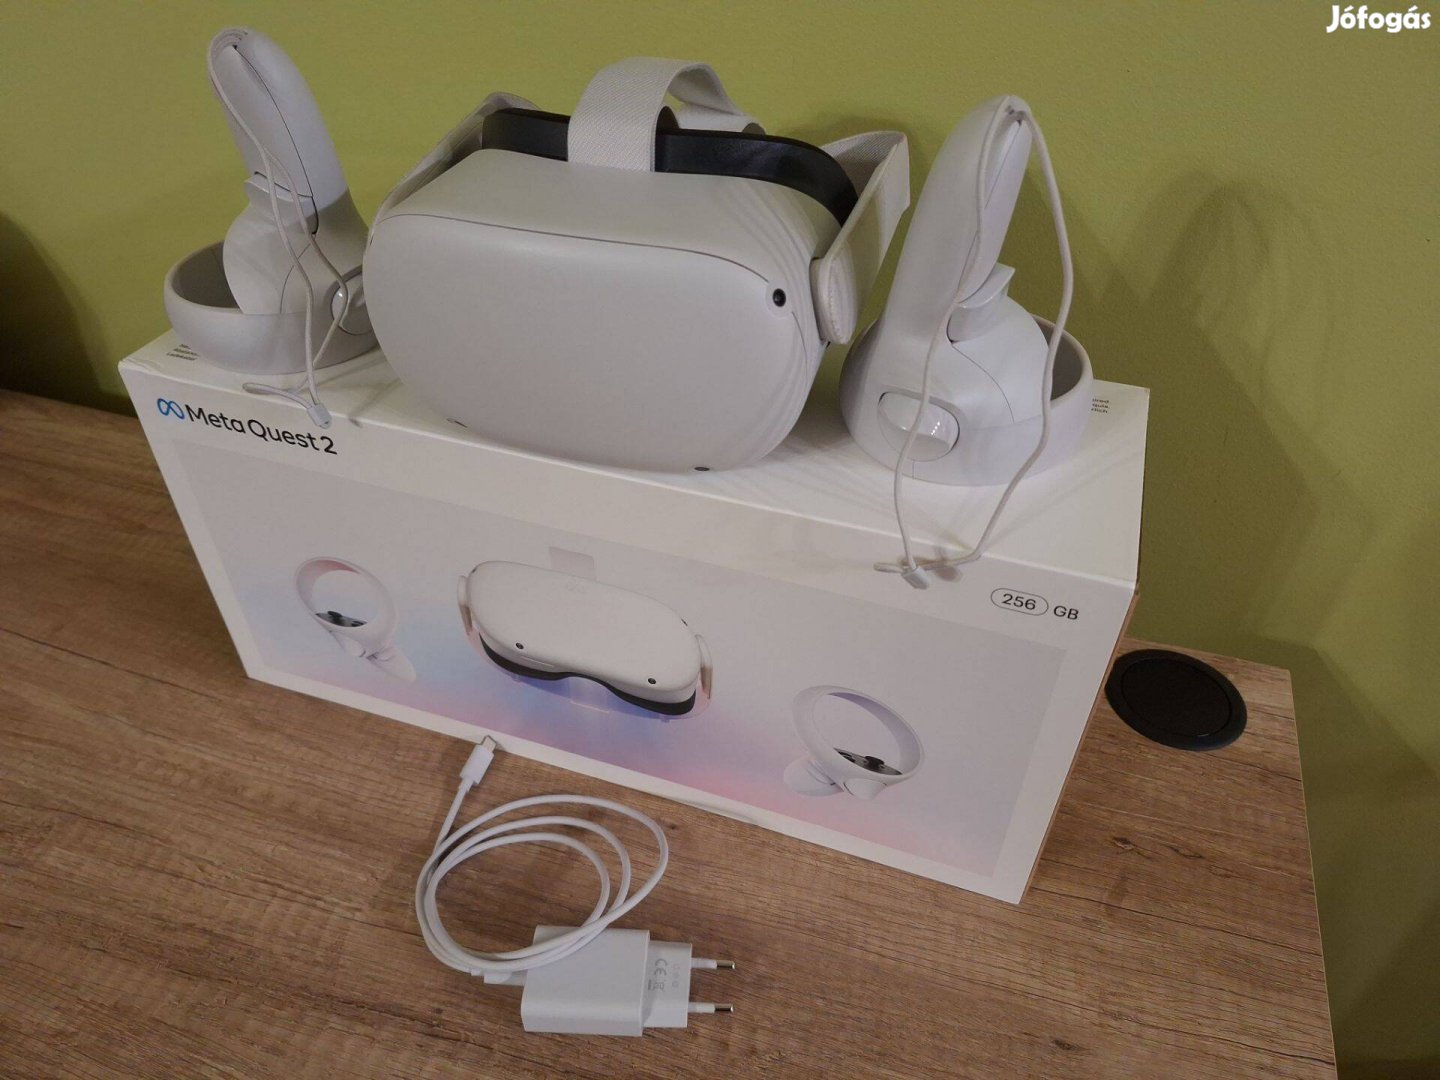 Eladó Meta Quest 2 VR szemüveg, 256 GB